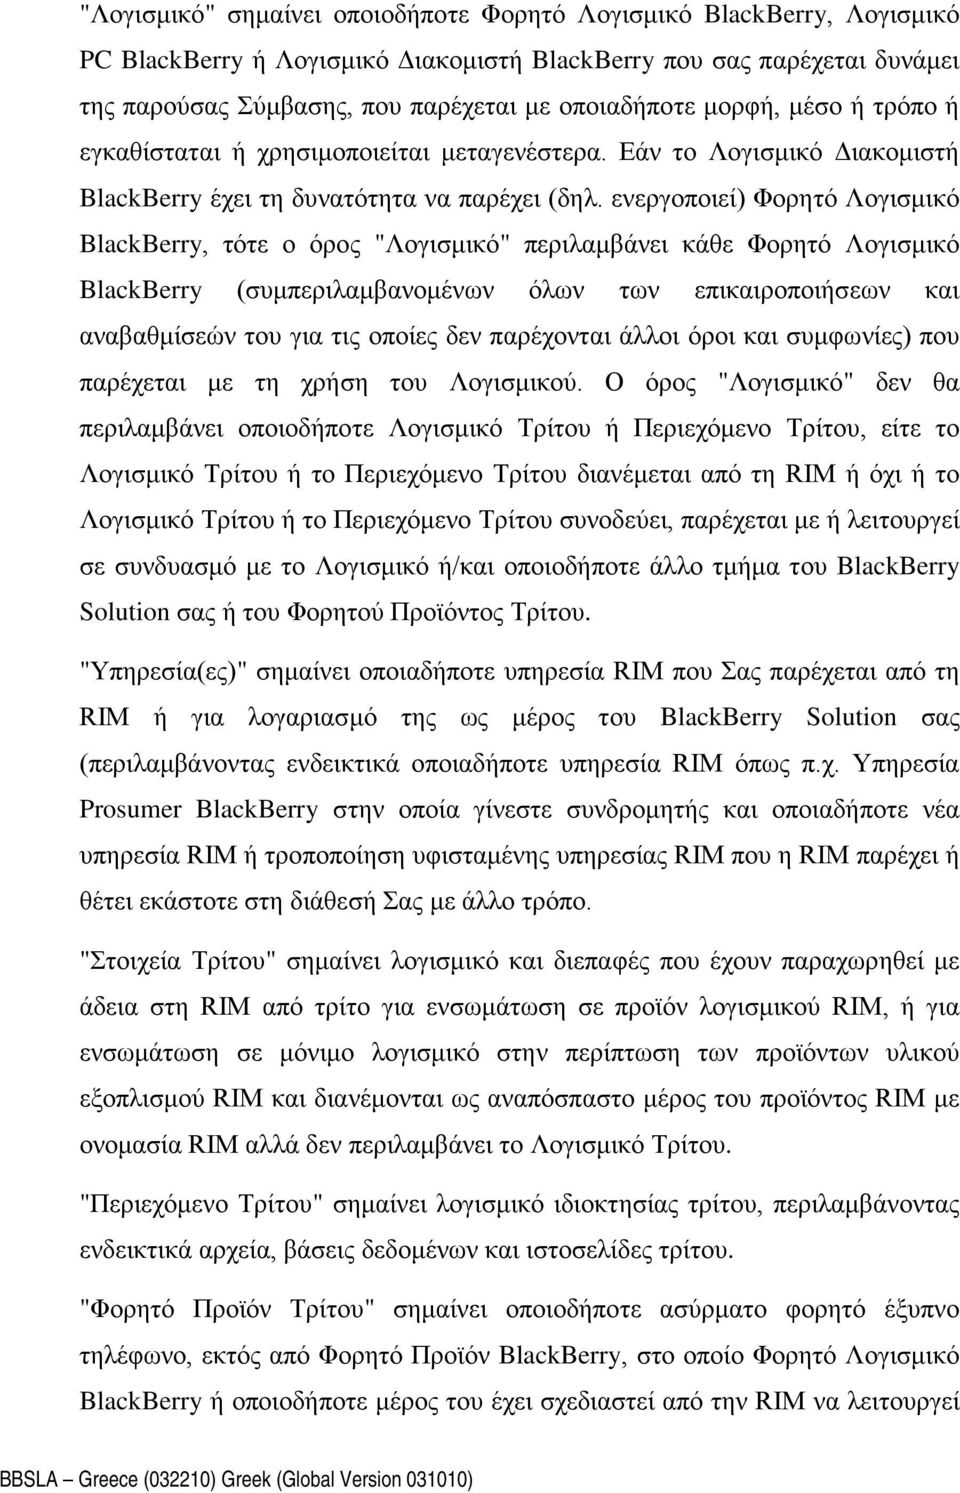 ενεργοποιεί) Φορητό Λογισμικό BlackBerry, τότε ο όρος "Λογισμικό" περιλαμβάνει κάθε Φορητό Λογισμικό BlackBerry (συμπεριλαμβανομένων όλων των επικαιροποιήσεων και αναβαθμίσεών του για τις οποίες δεν